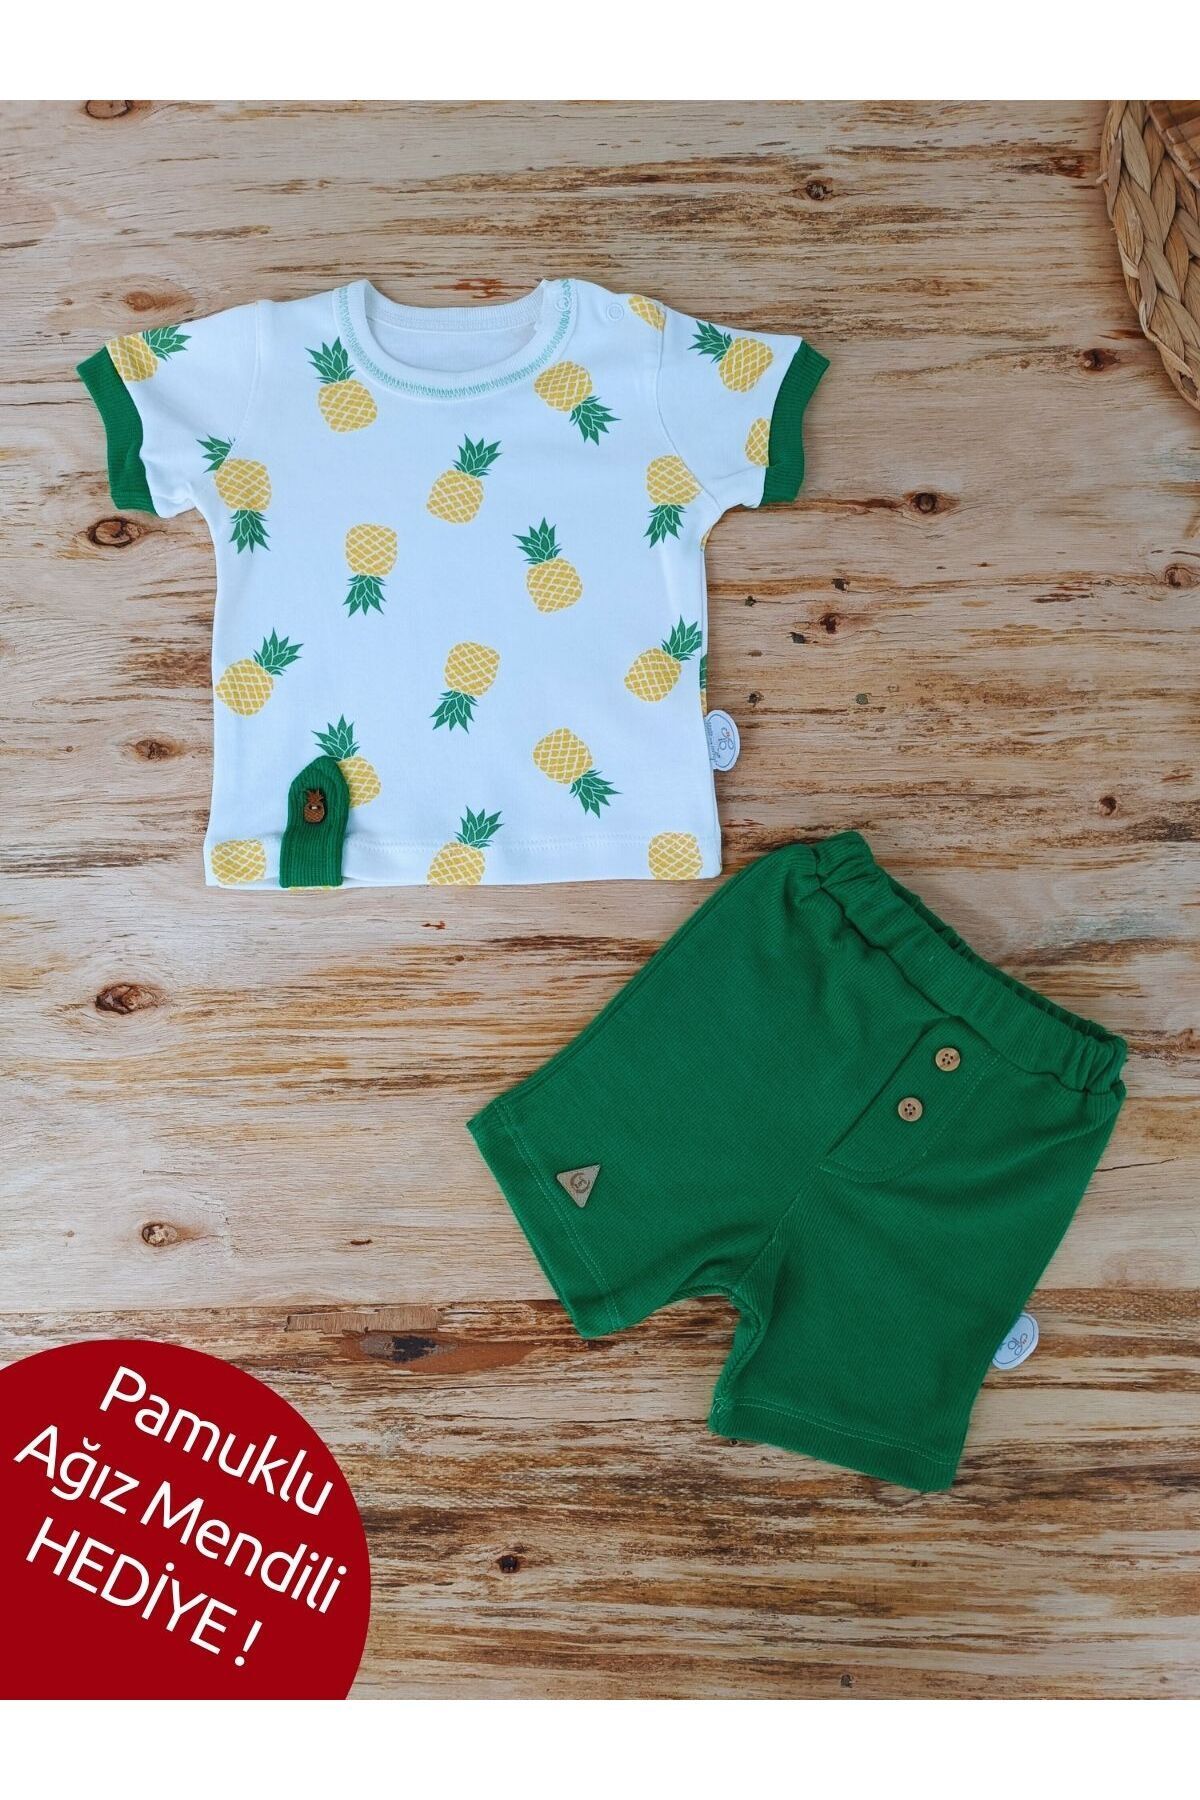 Tomuycuk Erkek Bebek Yazlık Kıyafet 2'li Set Yenidoğan Hediyelik Alt Üst Şortlu Takım Kısa Kollu Bebek Giyim